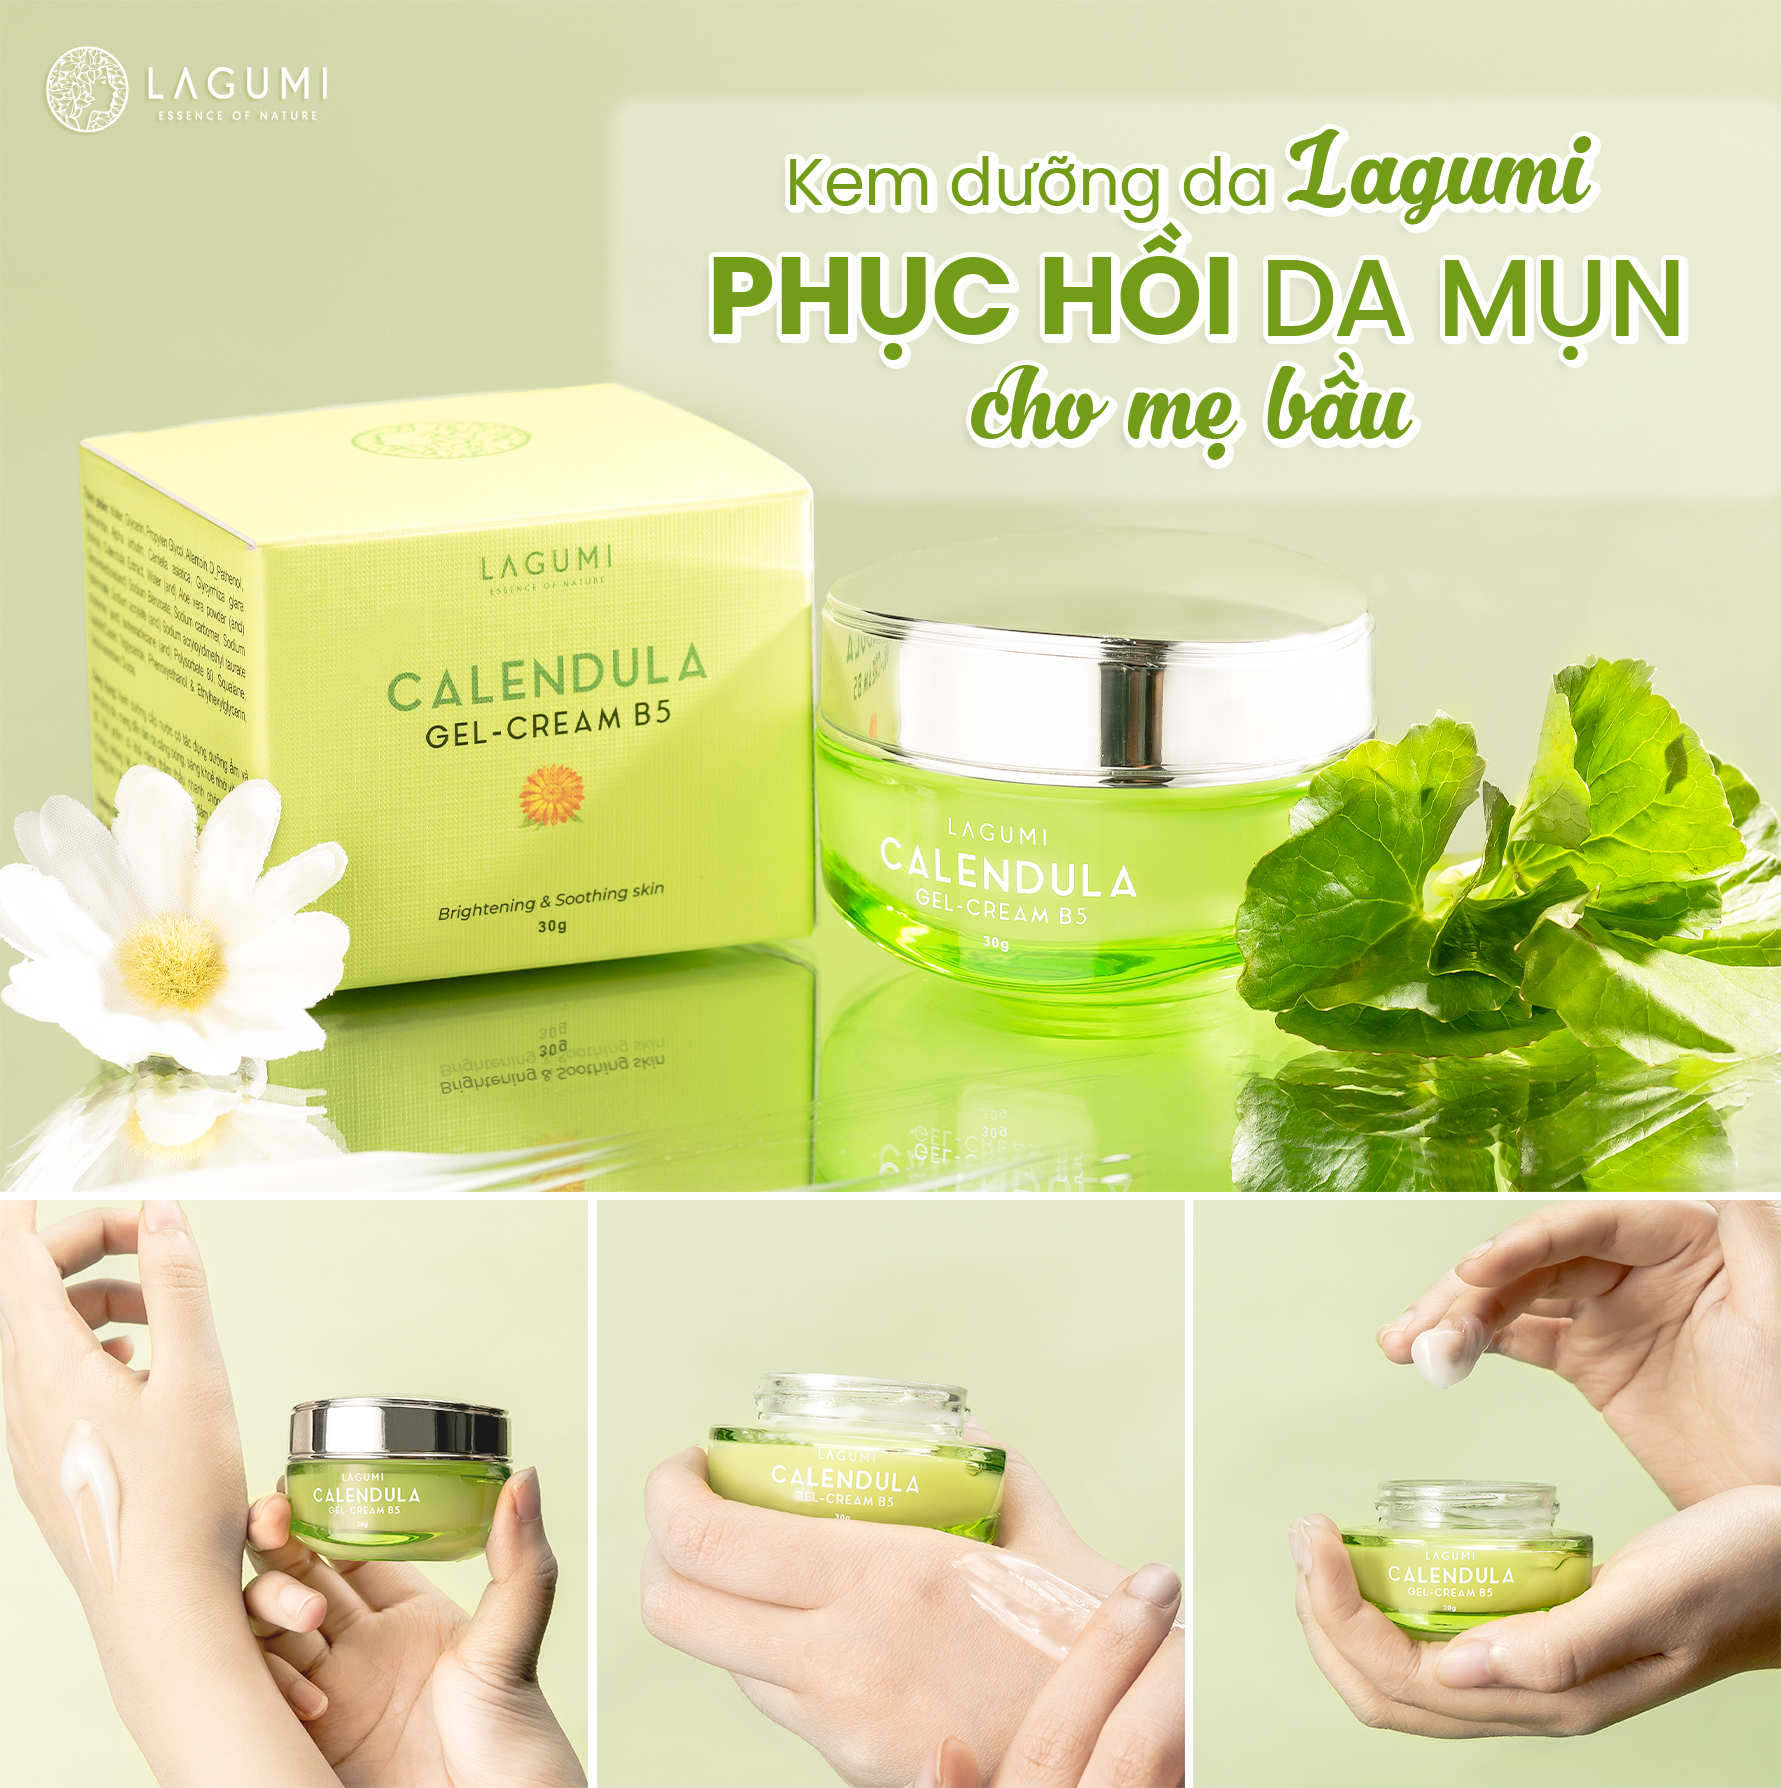 Kem dưỡng Lagumi cho da dầu, mụn với B5, Calendula cấp ẩm, giảm mụn, giảm thâm an toàn cho mẹ bầu và sau sinh